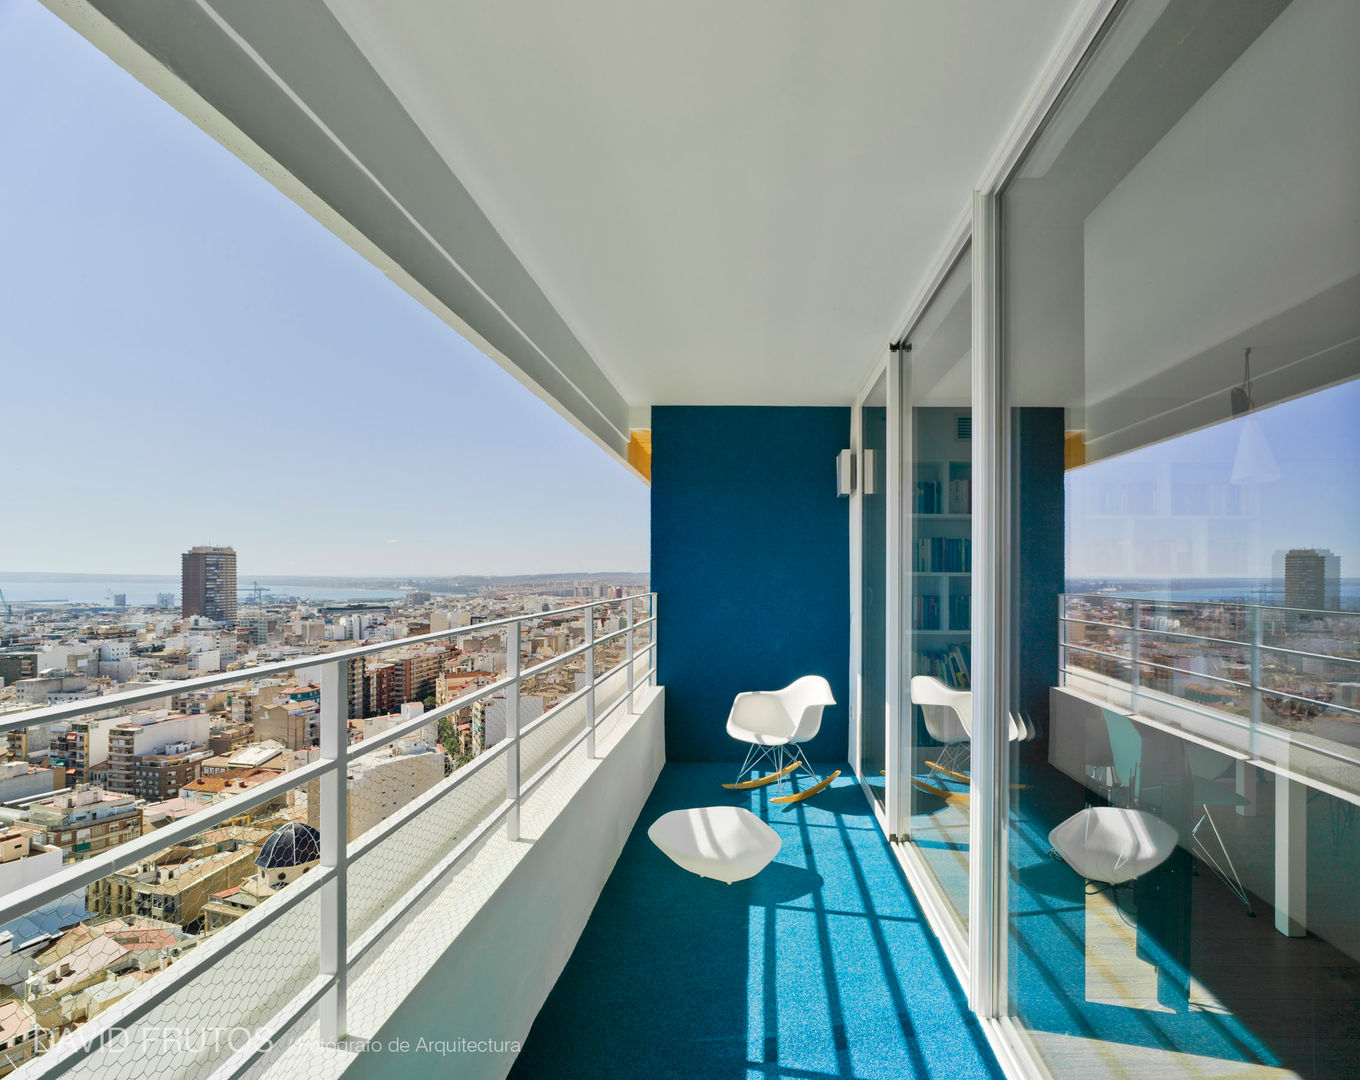 Un Pequeño piso en Alicante con Terraza y una vista al mar ¡espectacular!, FLAP STUDIO FLAP STUDIO Maisons modernes